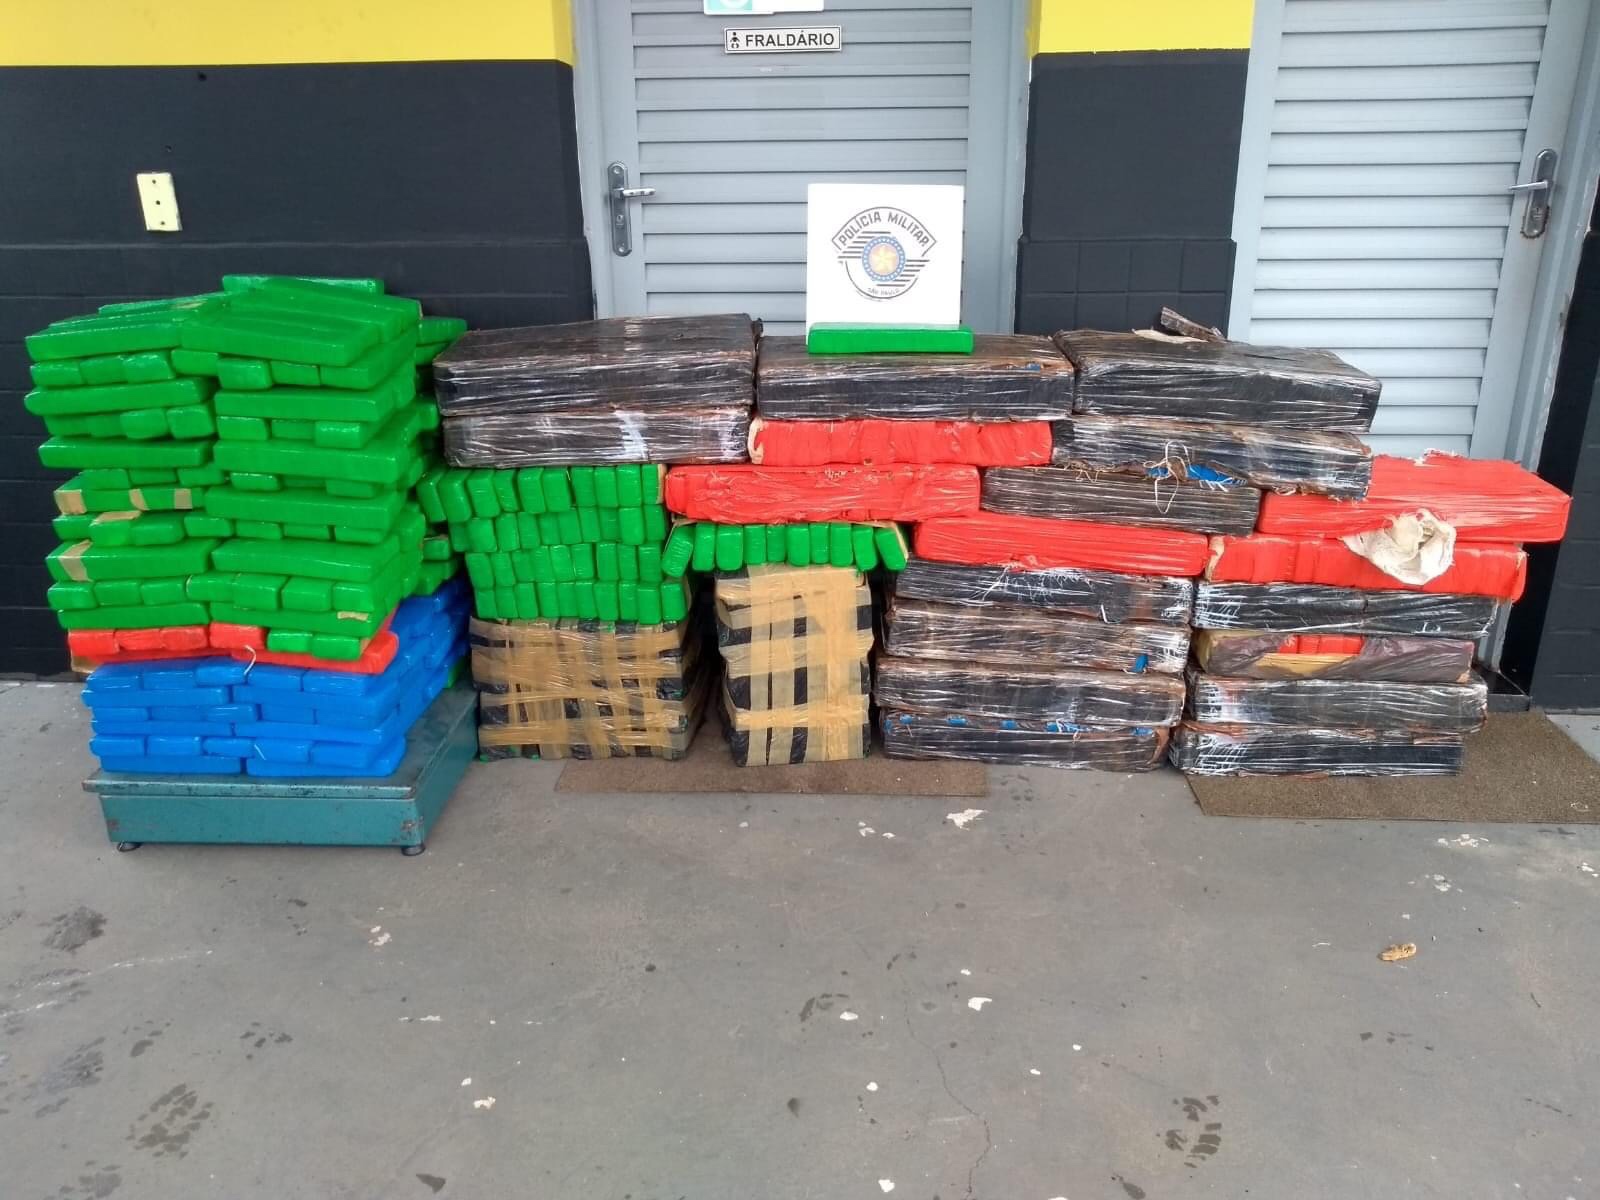 TOR flagra motorista transportando mais de 700 tabletes de maconha em Itatinga – SP